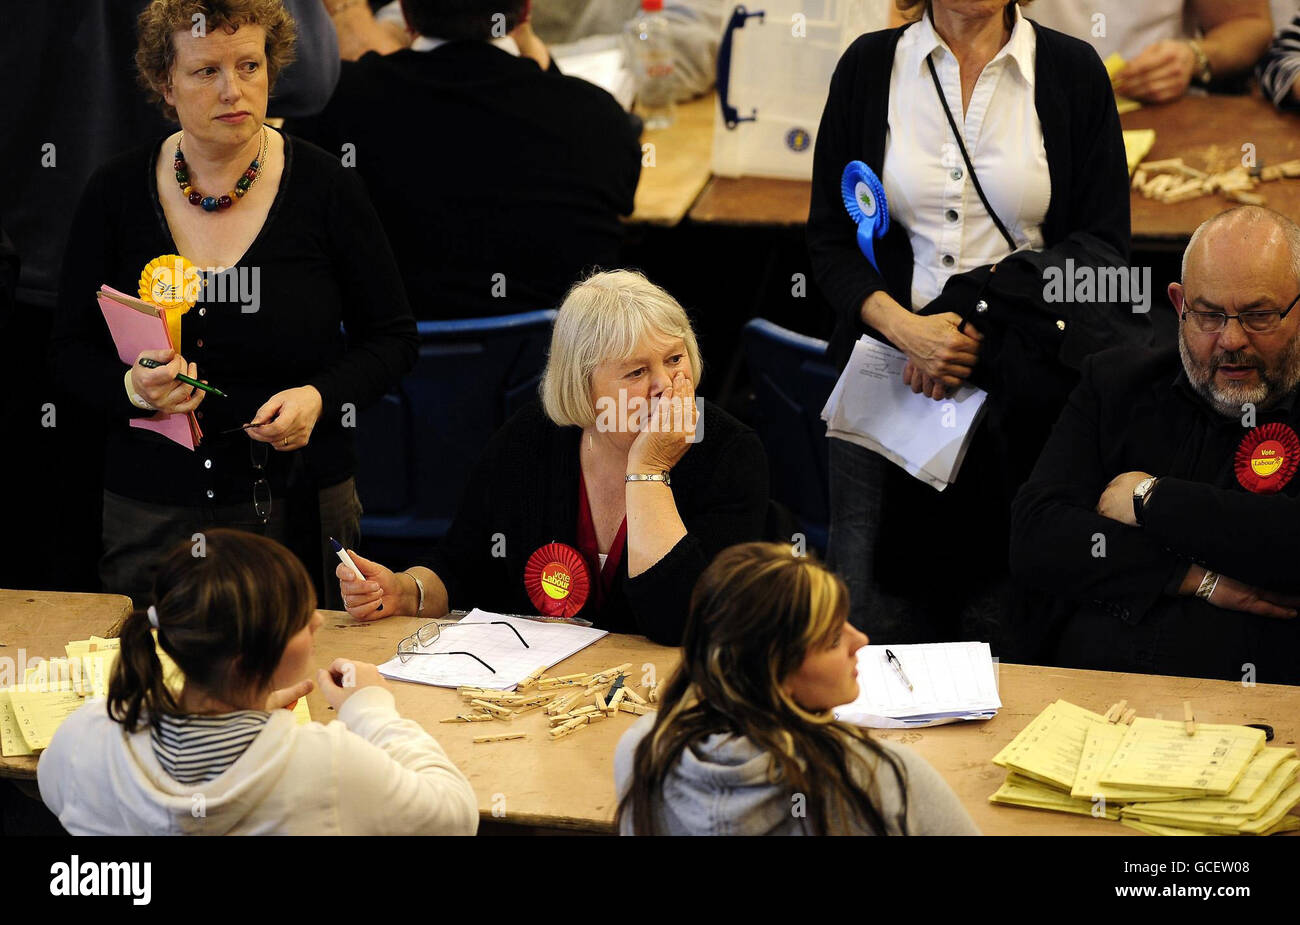 Ein reflektierender Unterstützer der Labour Party beobachtet, wie die Stimmen gezählt werden, wenn die Wahlurnen heute Abend im Ponds Forge Leisure Center in Sheffield eintreffen, da die Stimmen bei den Parlamentswahlen 2010 gezählt werden. Stockfoto